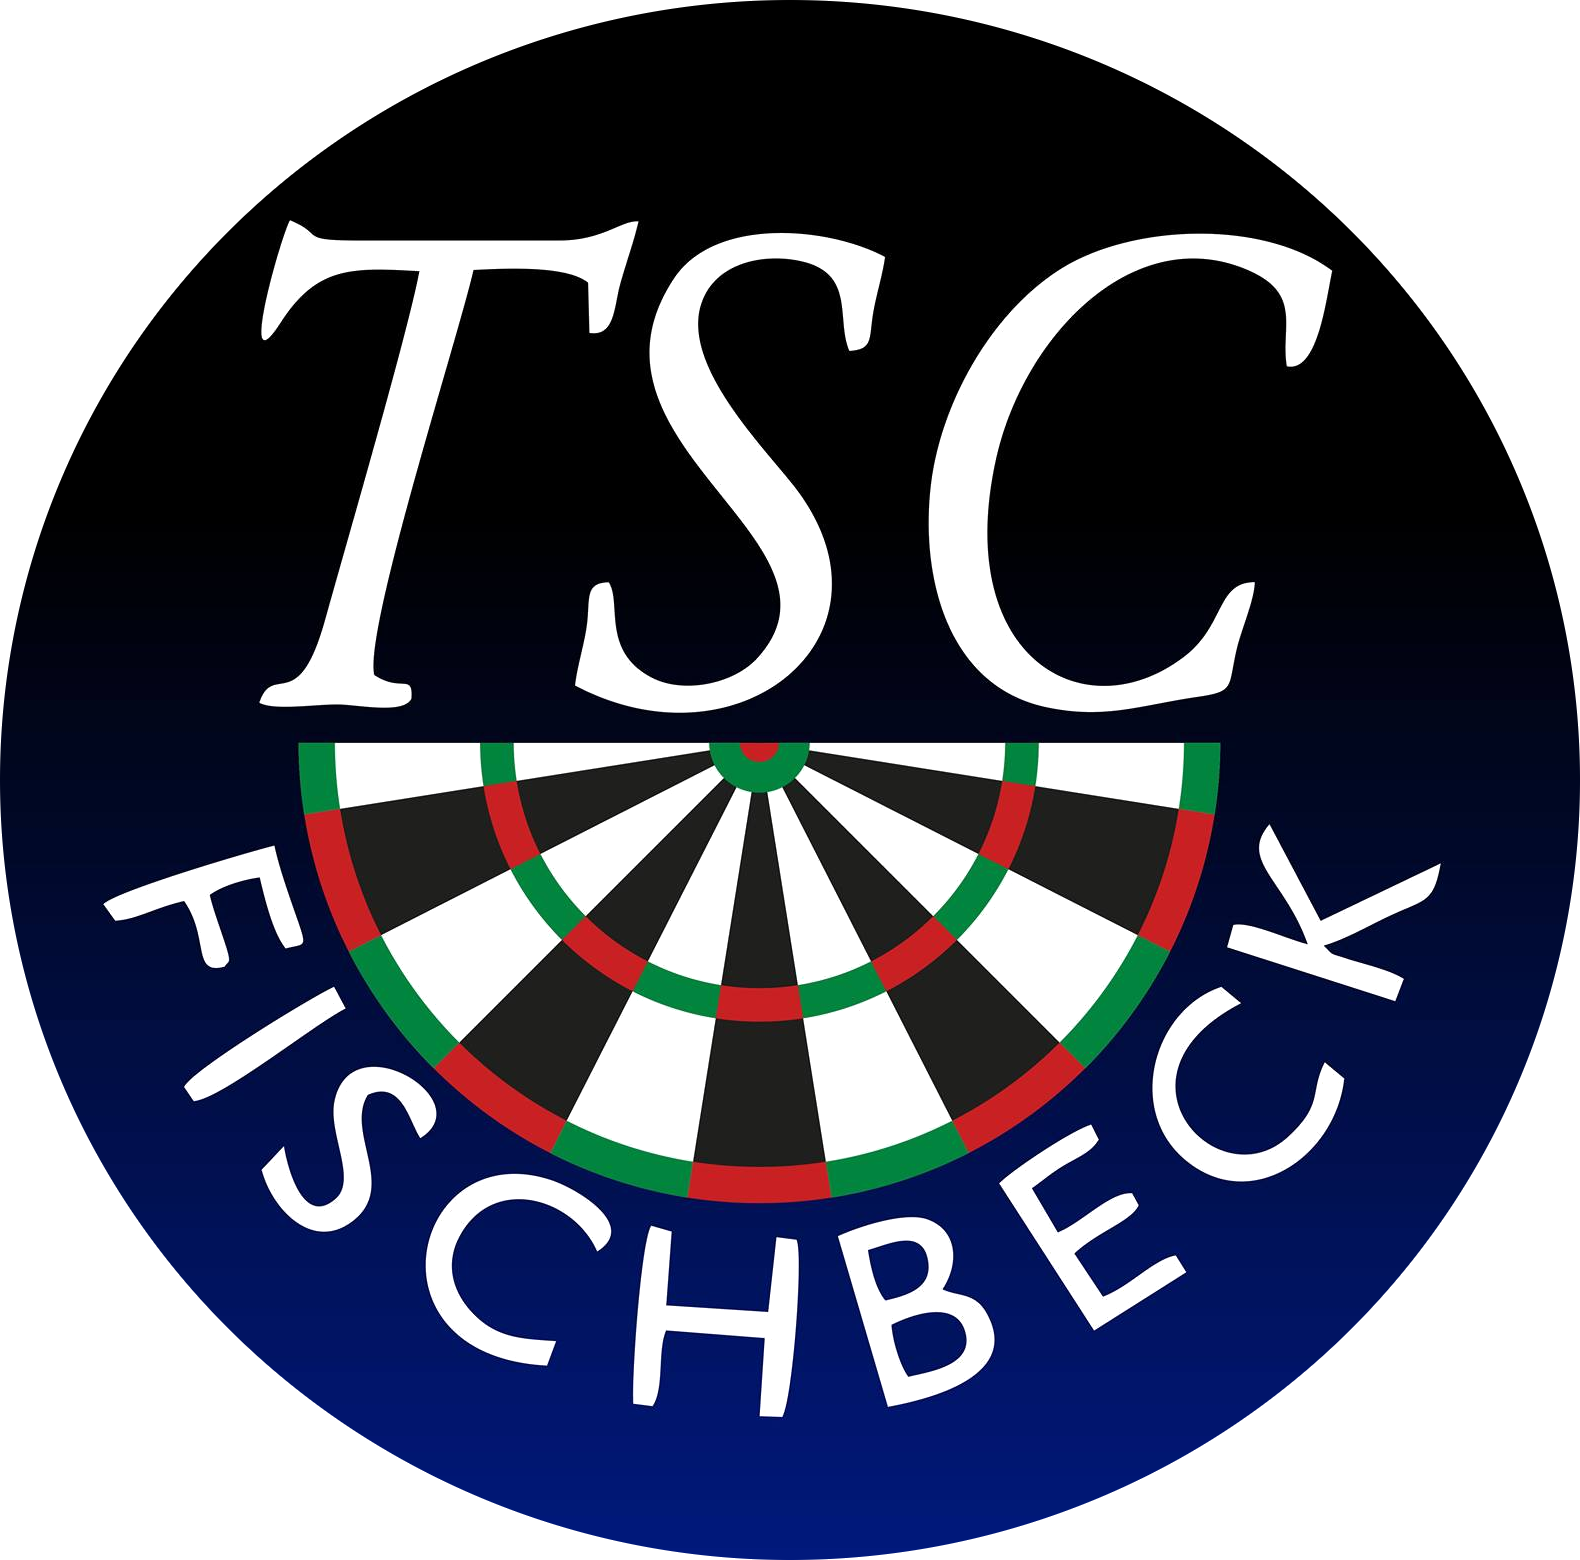 TSC Fischbeck Arrowheads A